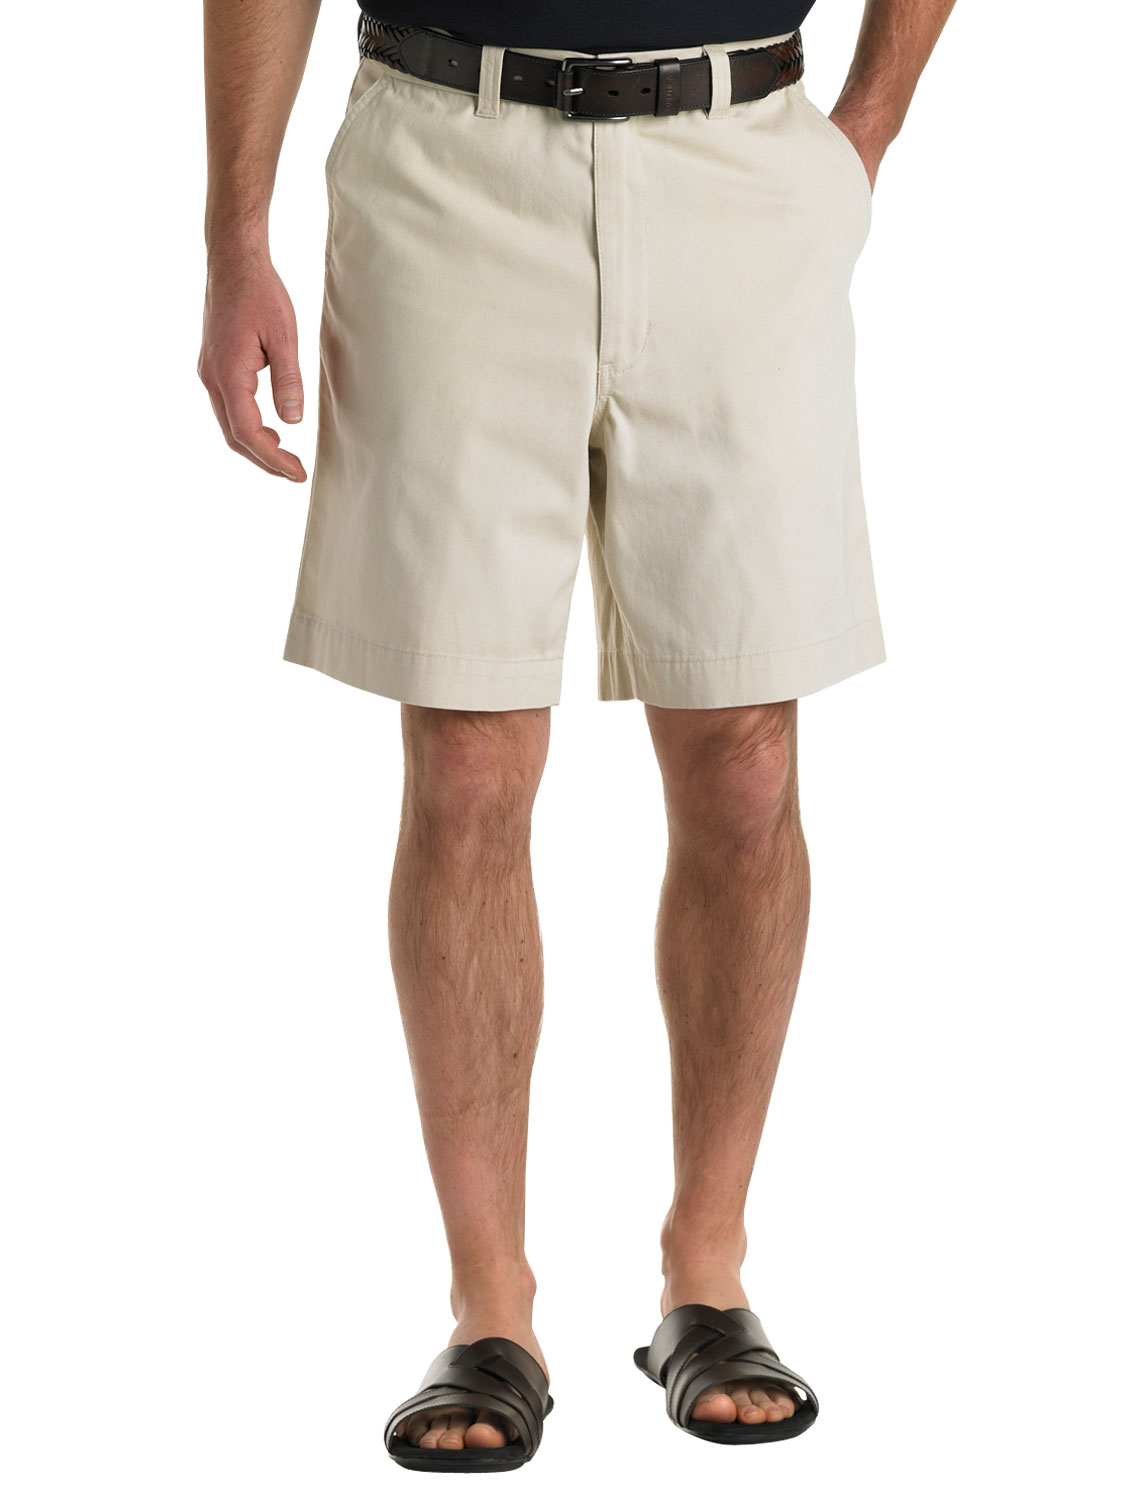 Oak Hill Waist-Relaxer Super Soft Chino Shorts